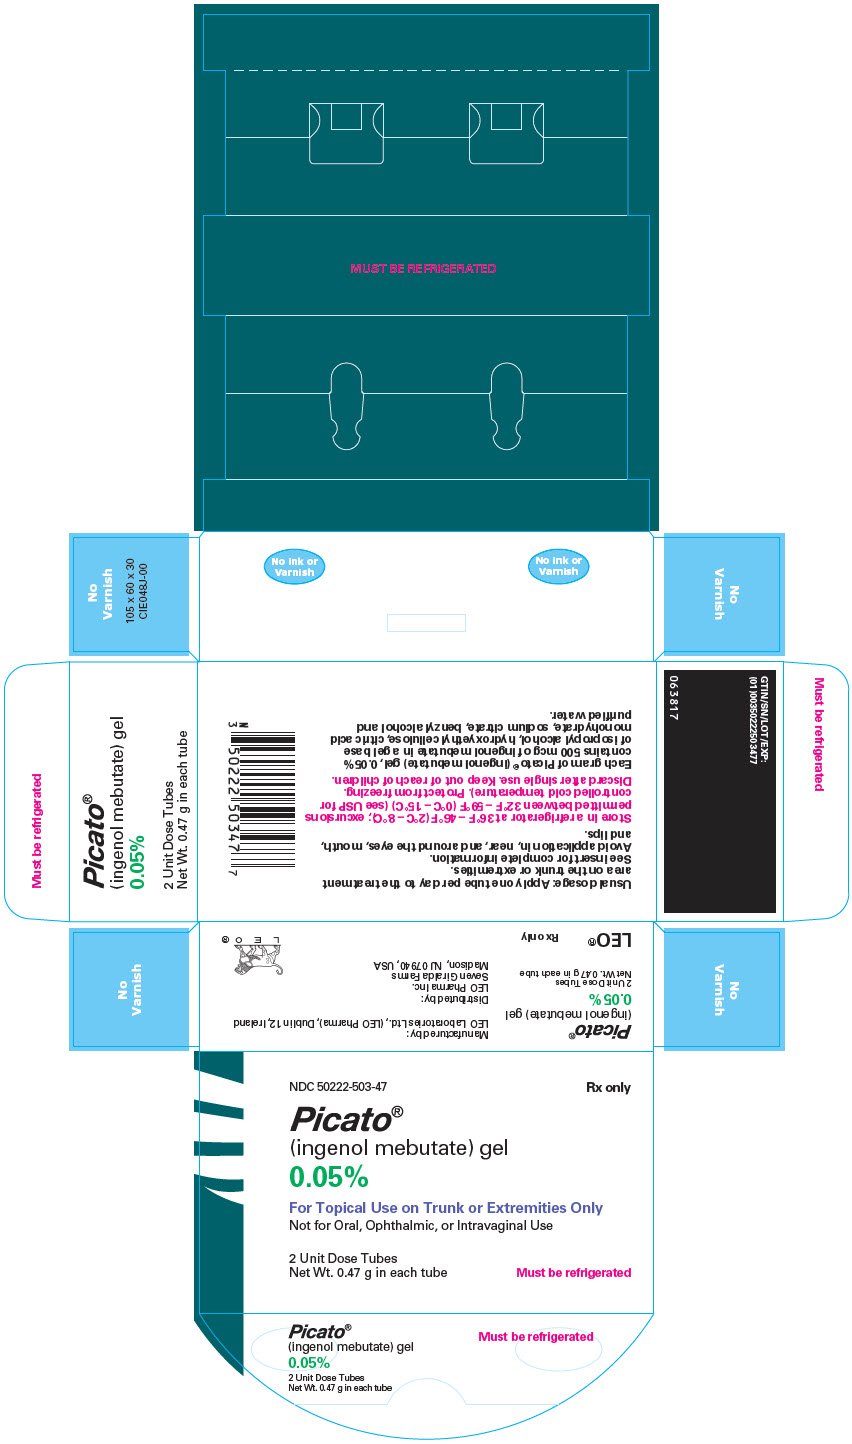 PRINCIPAL DISPLAY PANEL - 0.47 g Tube Carton - 0.05%